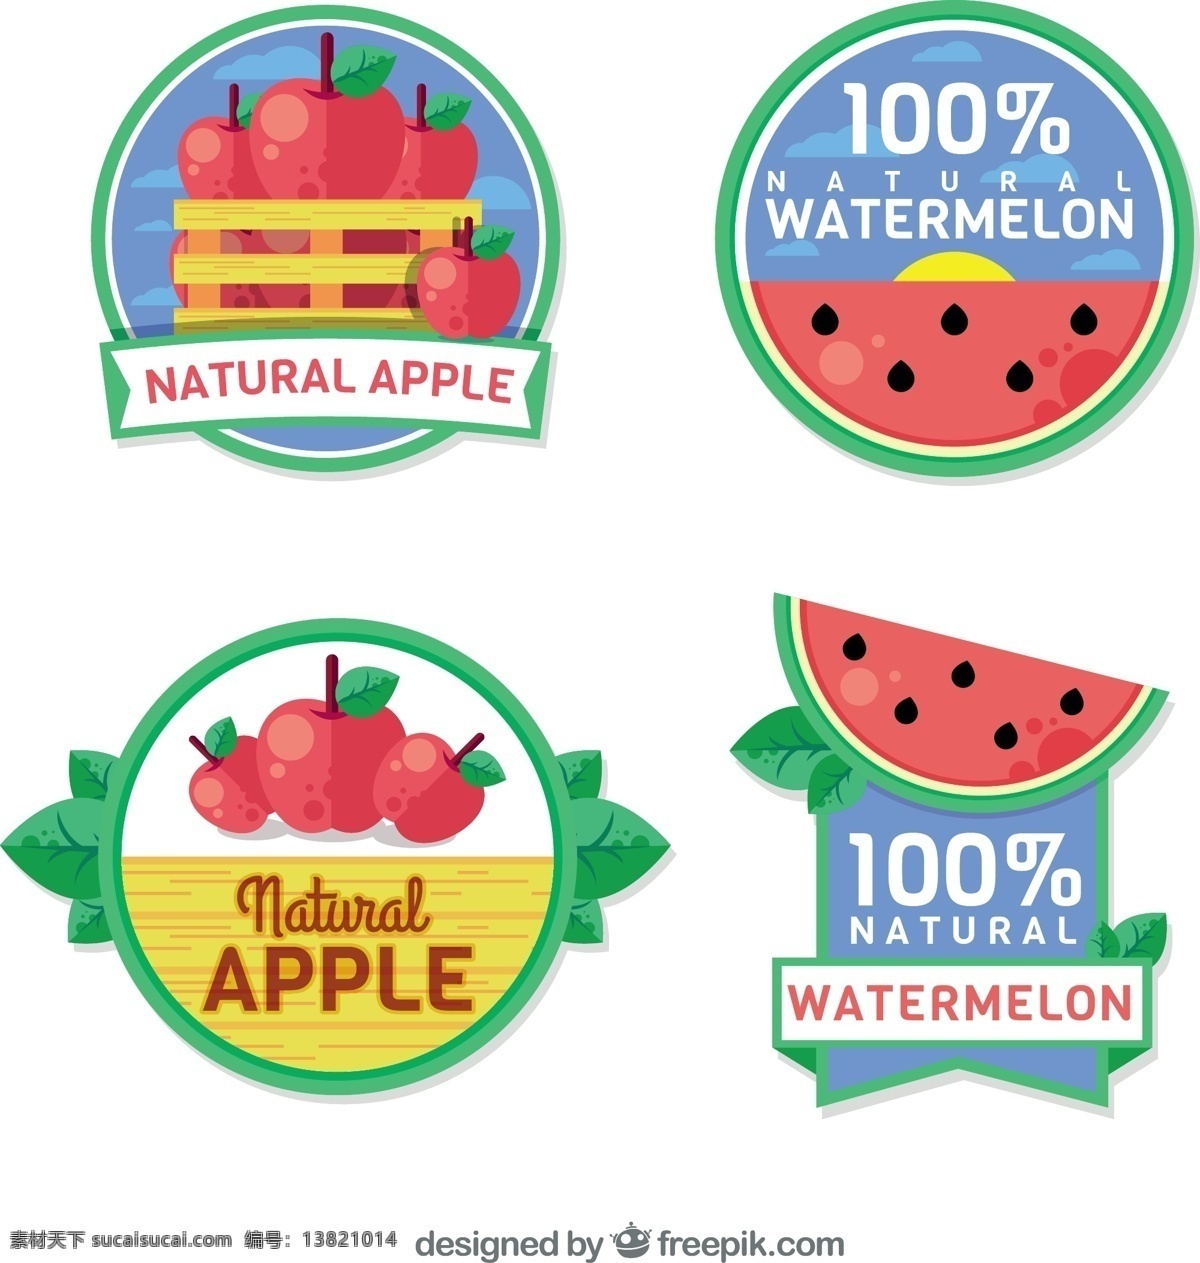 平面设计 中 水果 贴纸 食品 夏季 标签 热带 平板 饮料 果汁 天然 健康 吃 印 健康食品 饮食 营养